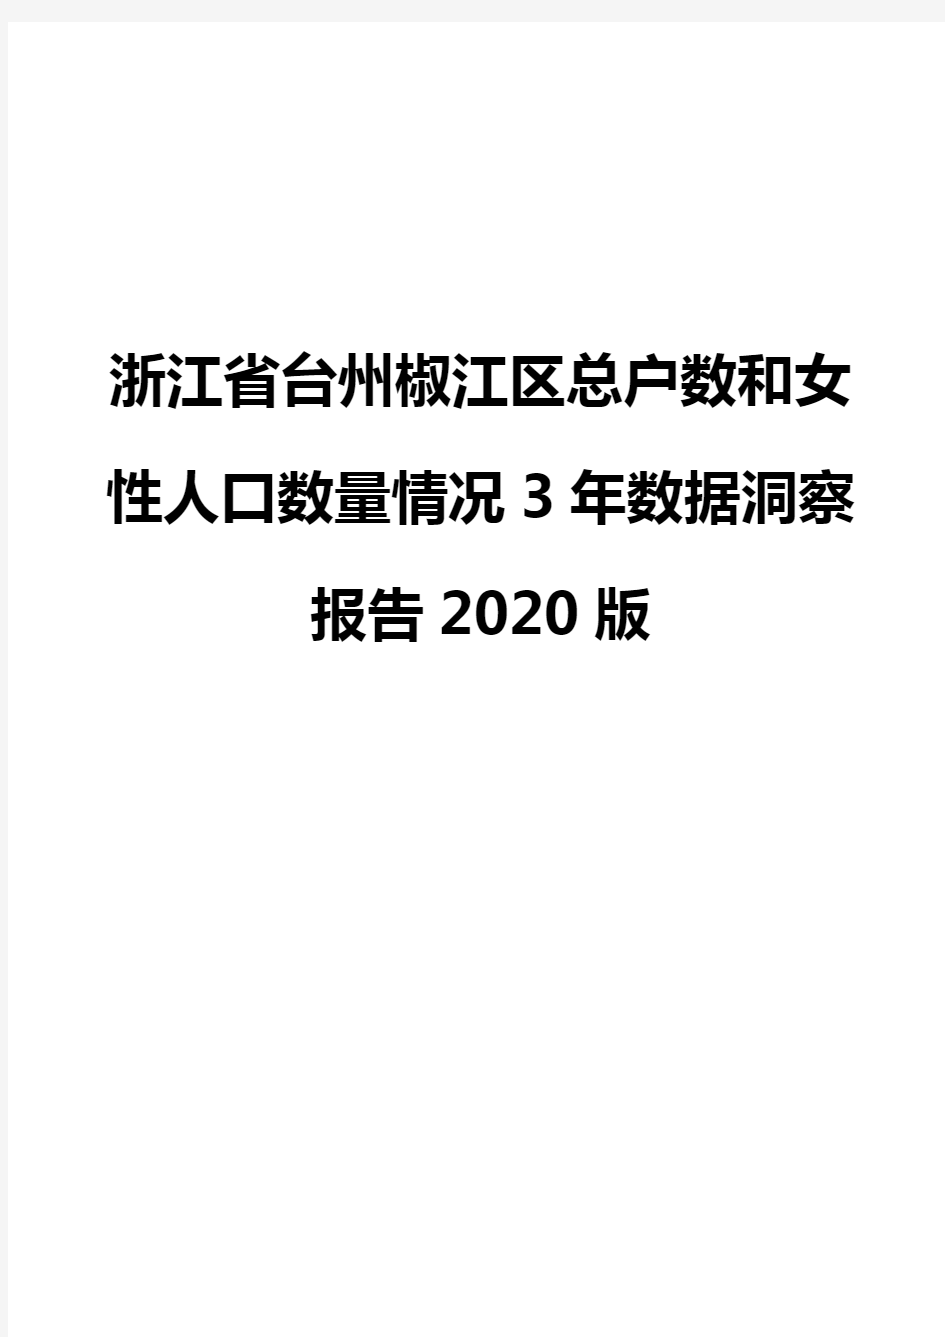 浙江省台州椒江区总户数和女性人口数量情况3年数据洞察报告2020版